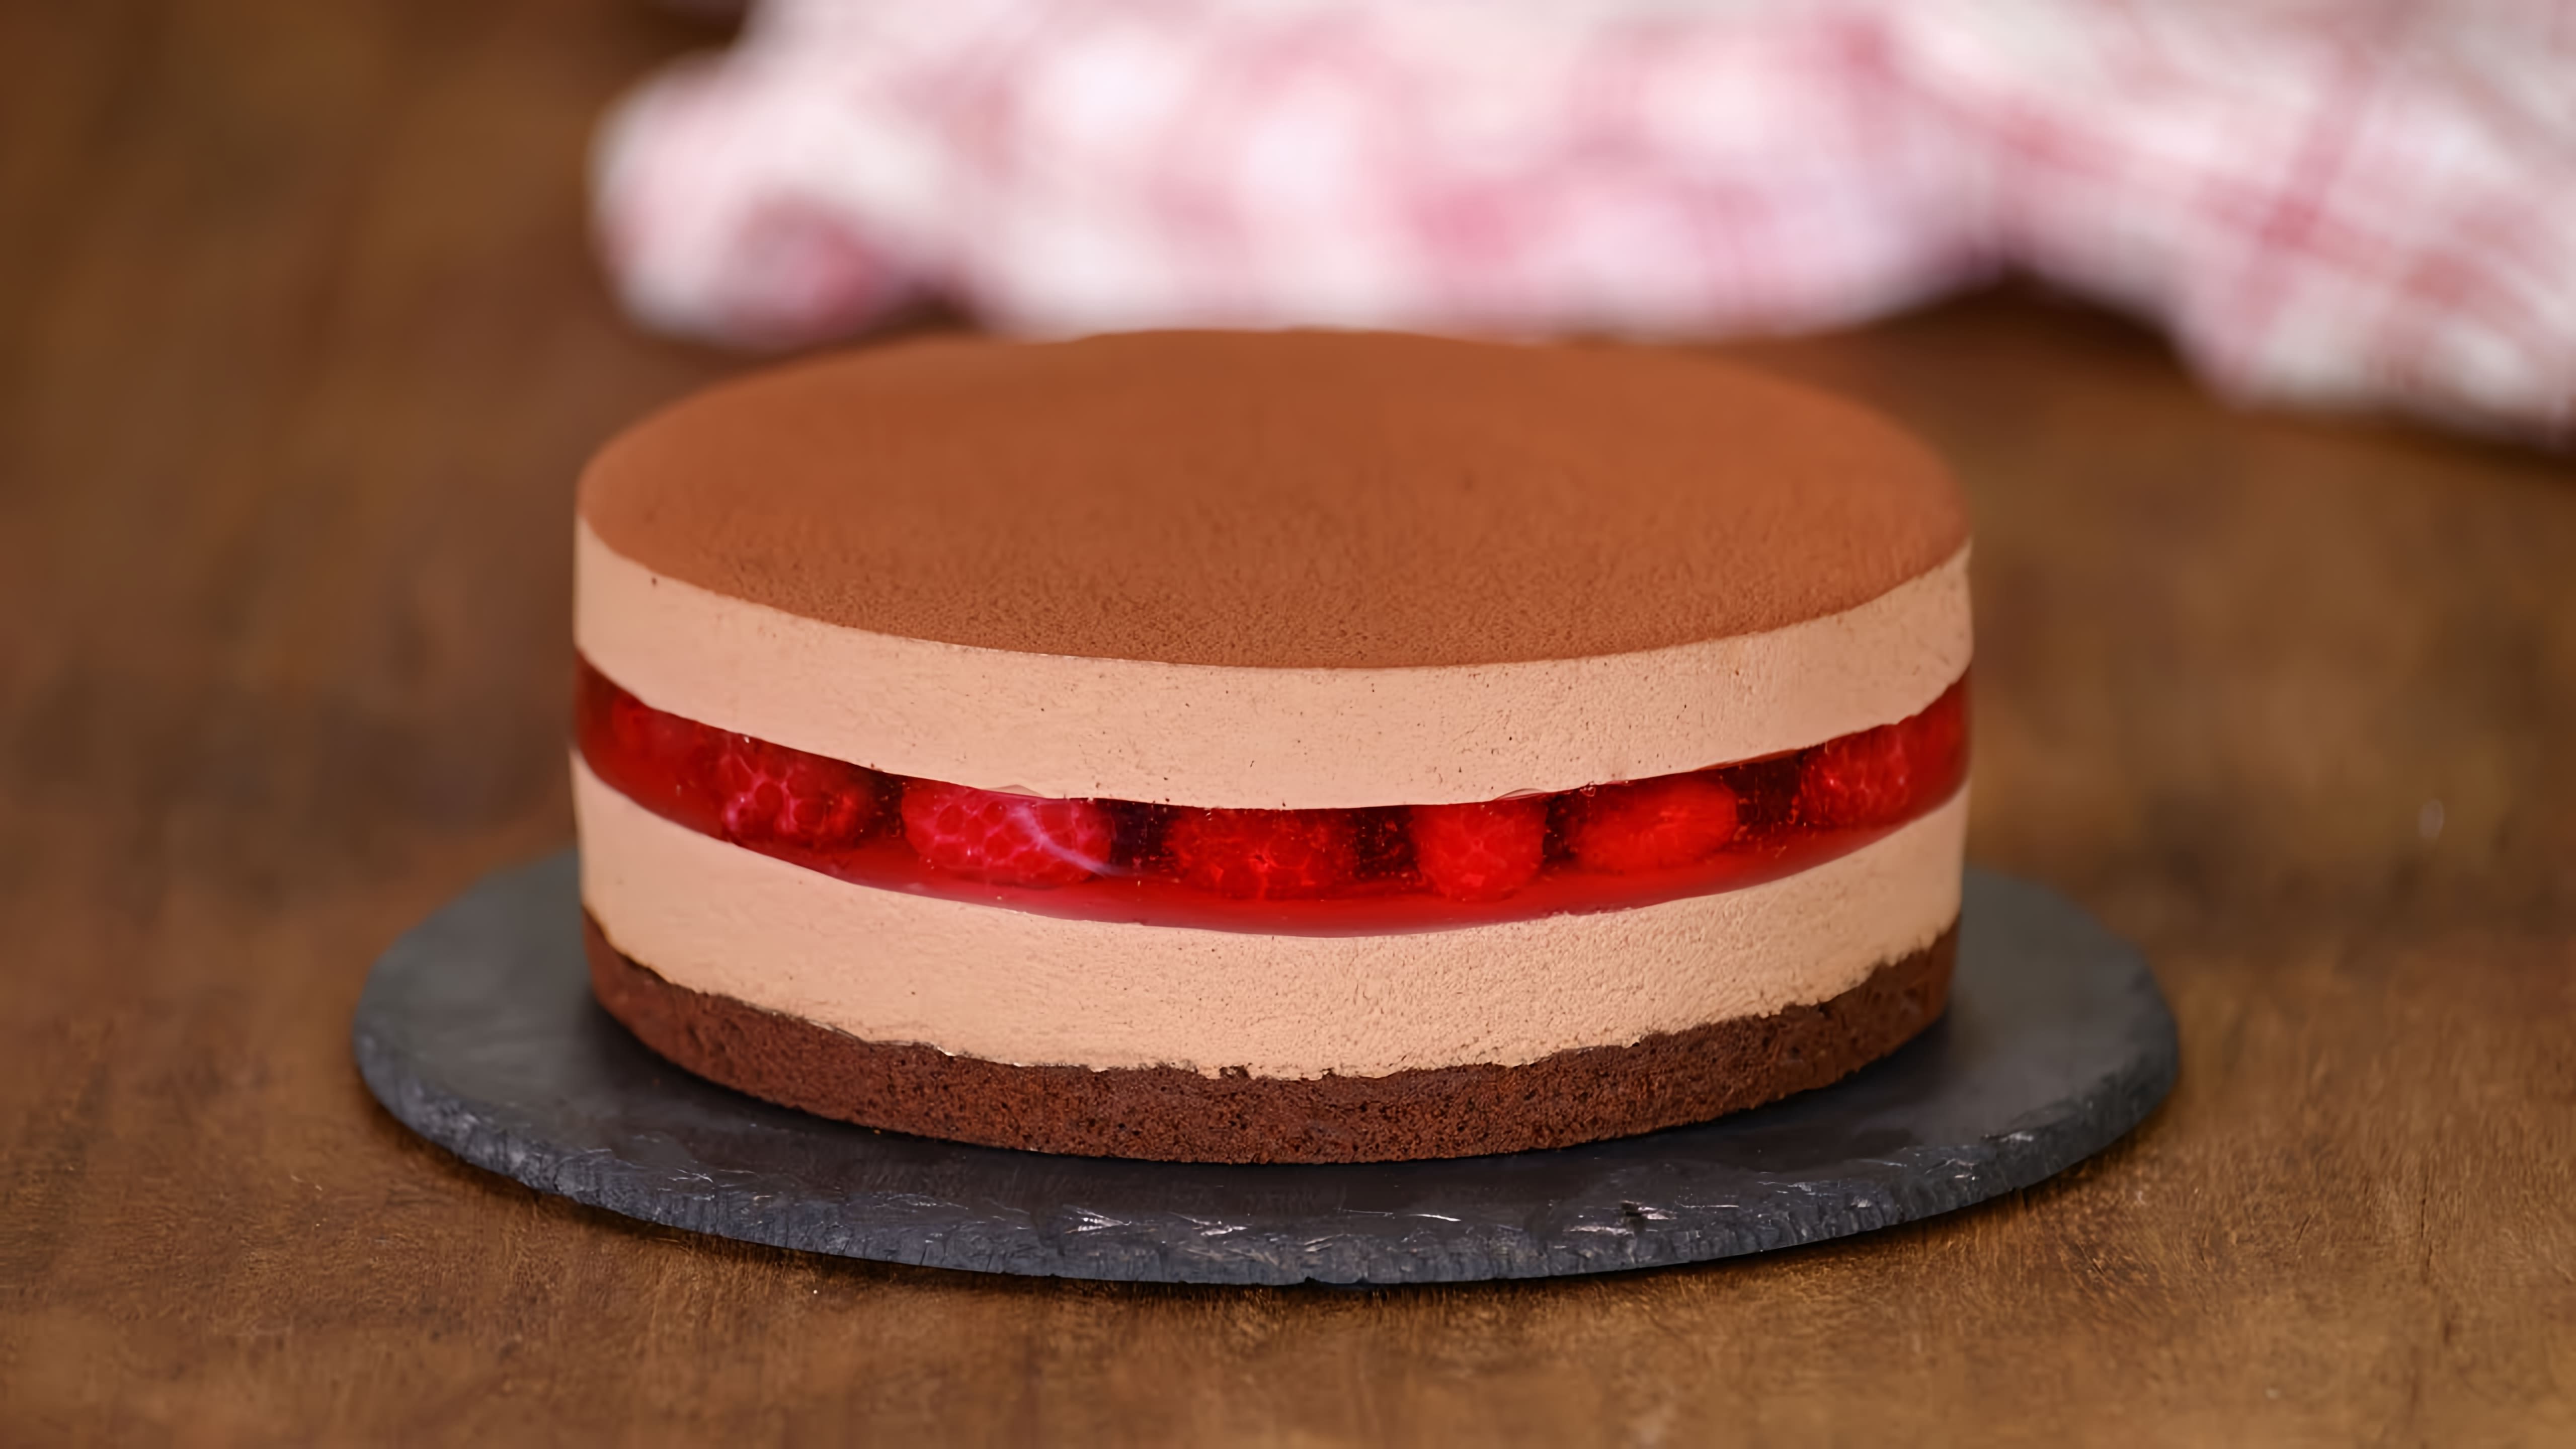 Муссовый Шоколадный Торт с Малиной - это видео-ролик, который демонстрирует процесс приготовления вкусного и изысканного десерта